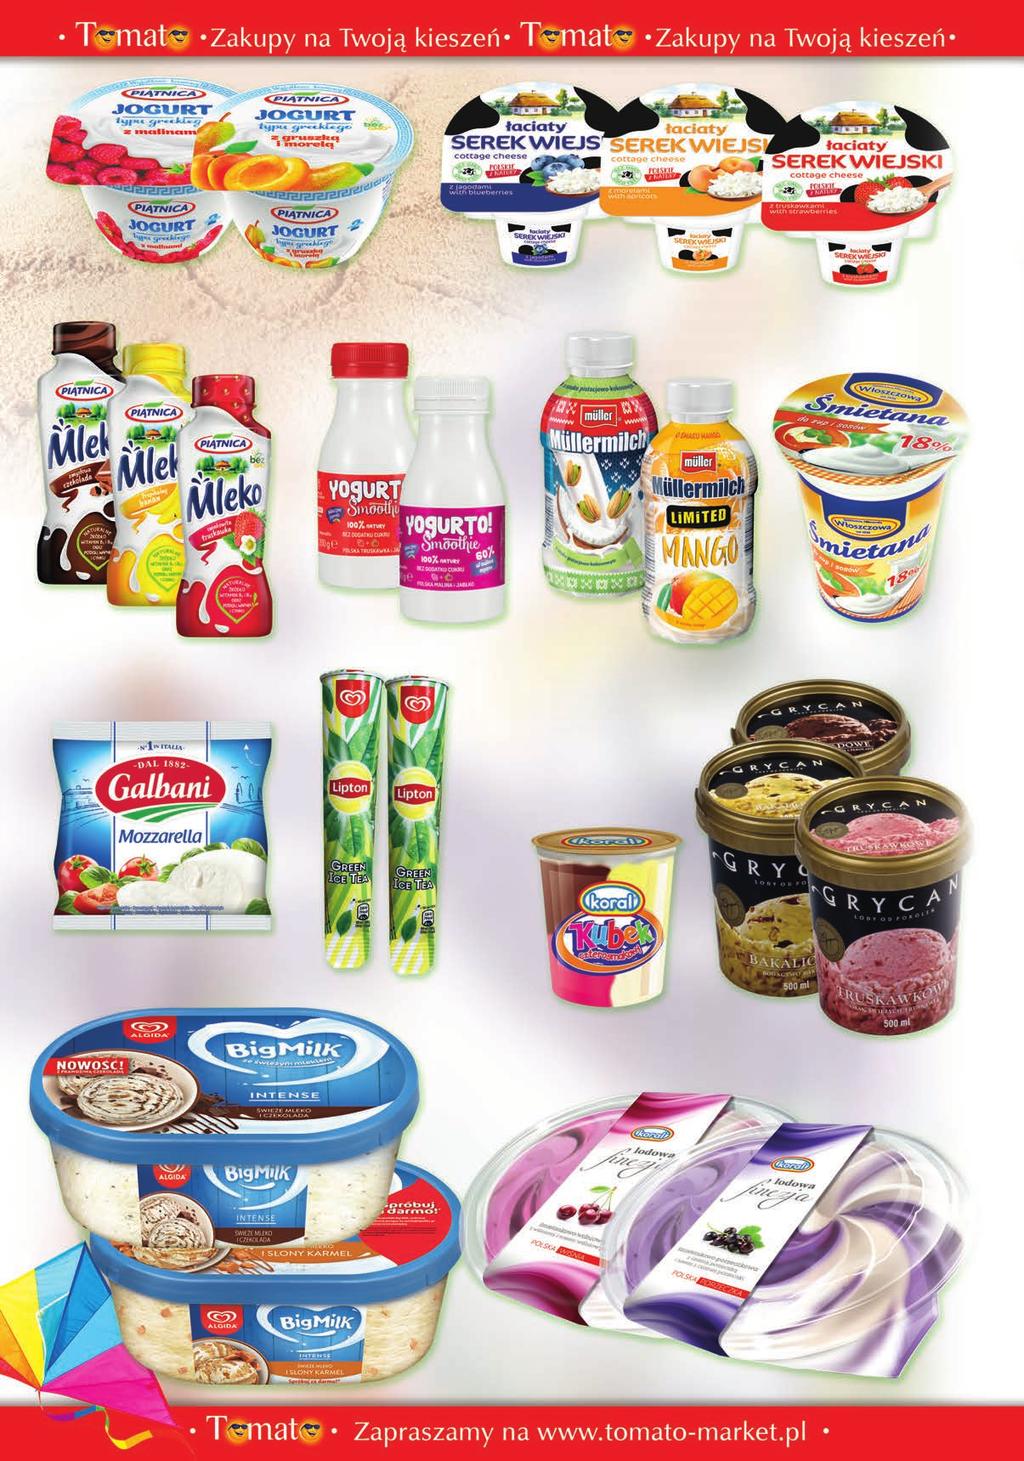 2,59 1,49 Jogurt typu greckiego 150 g (w asortymencie) PIĄTNICA Serek wiejski smakowy ŁACIATY 150 g (w asortymencie) MLEKPOL 2,19 1,69 2,39 2,59 Mleko smakowe 330 ml (w asortymencie) PIĄTNICA Yogurto